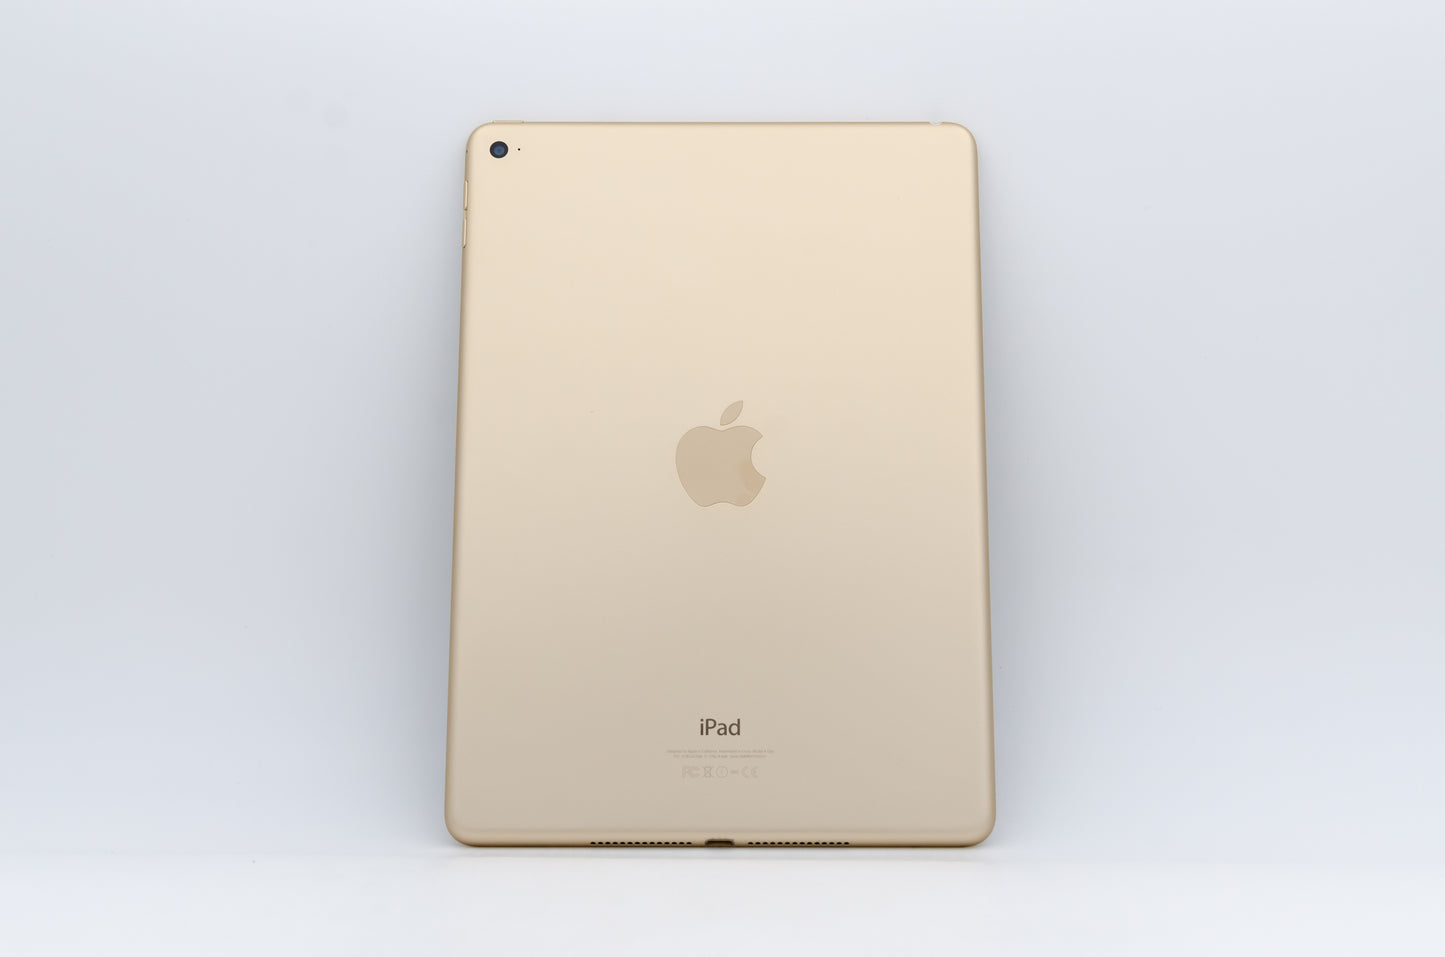 apple-2014-9.7-inch-ipad-air-2-a1566-gold/white-2